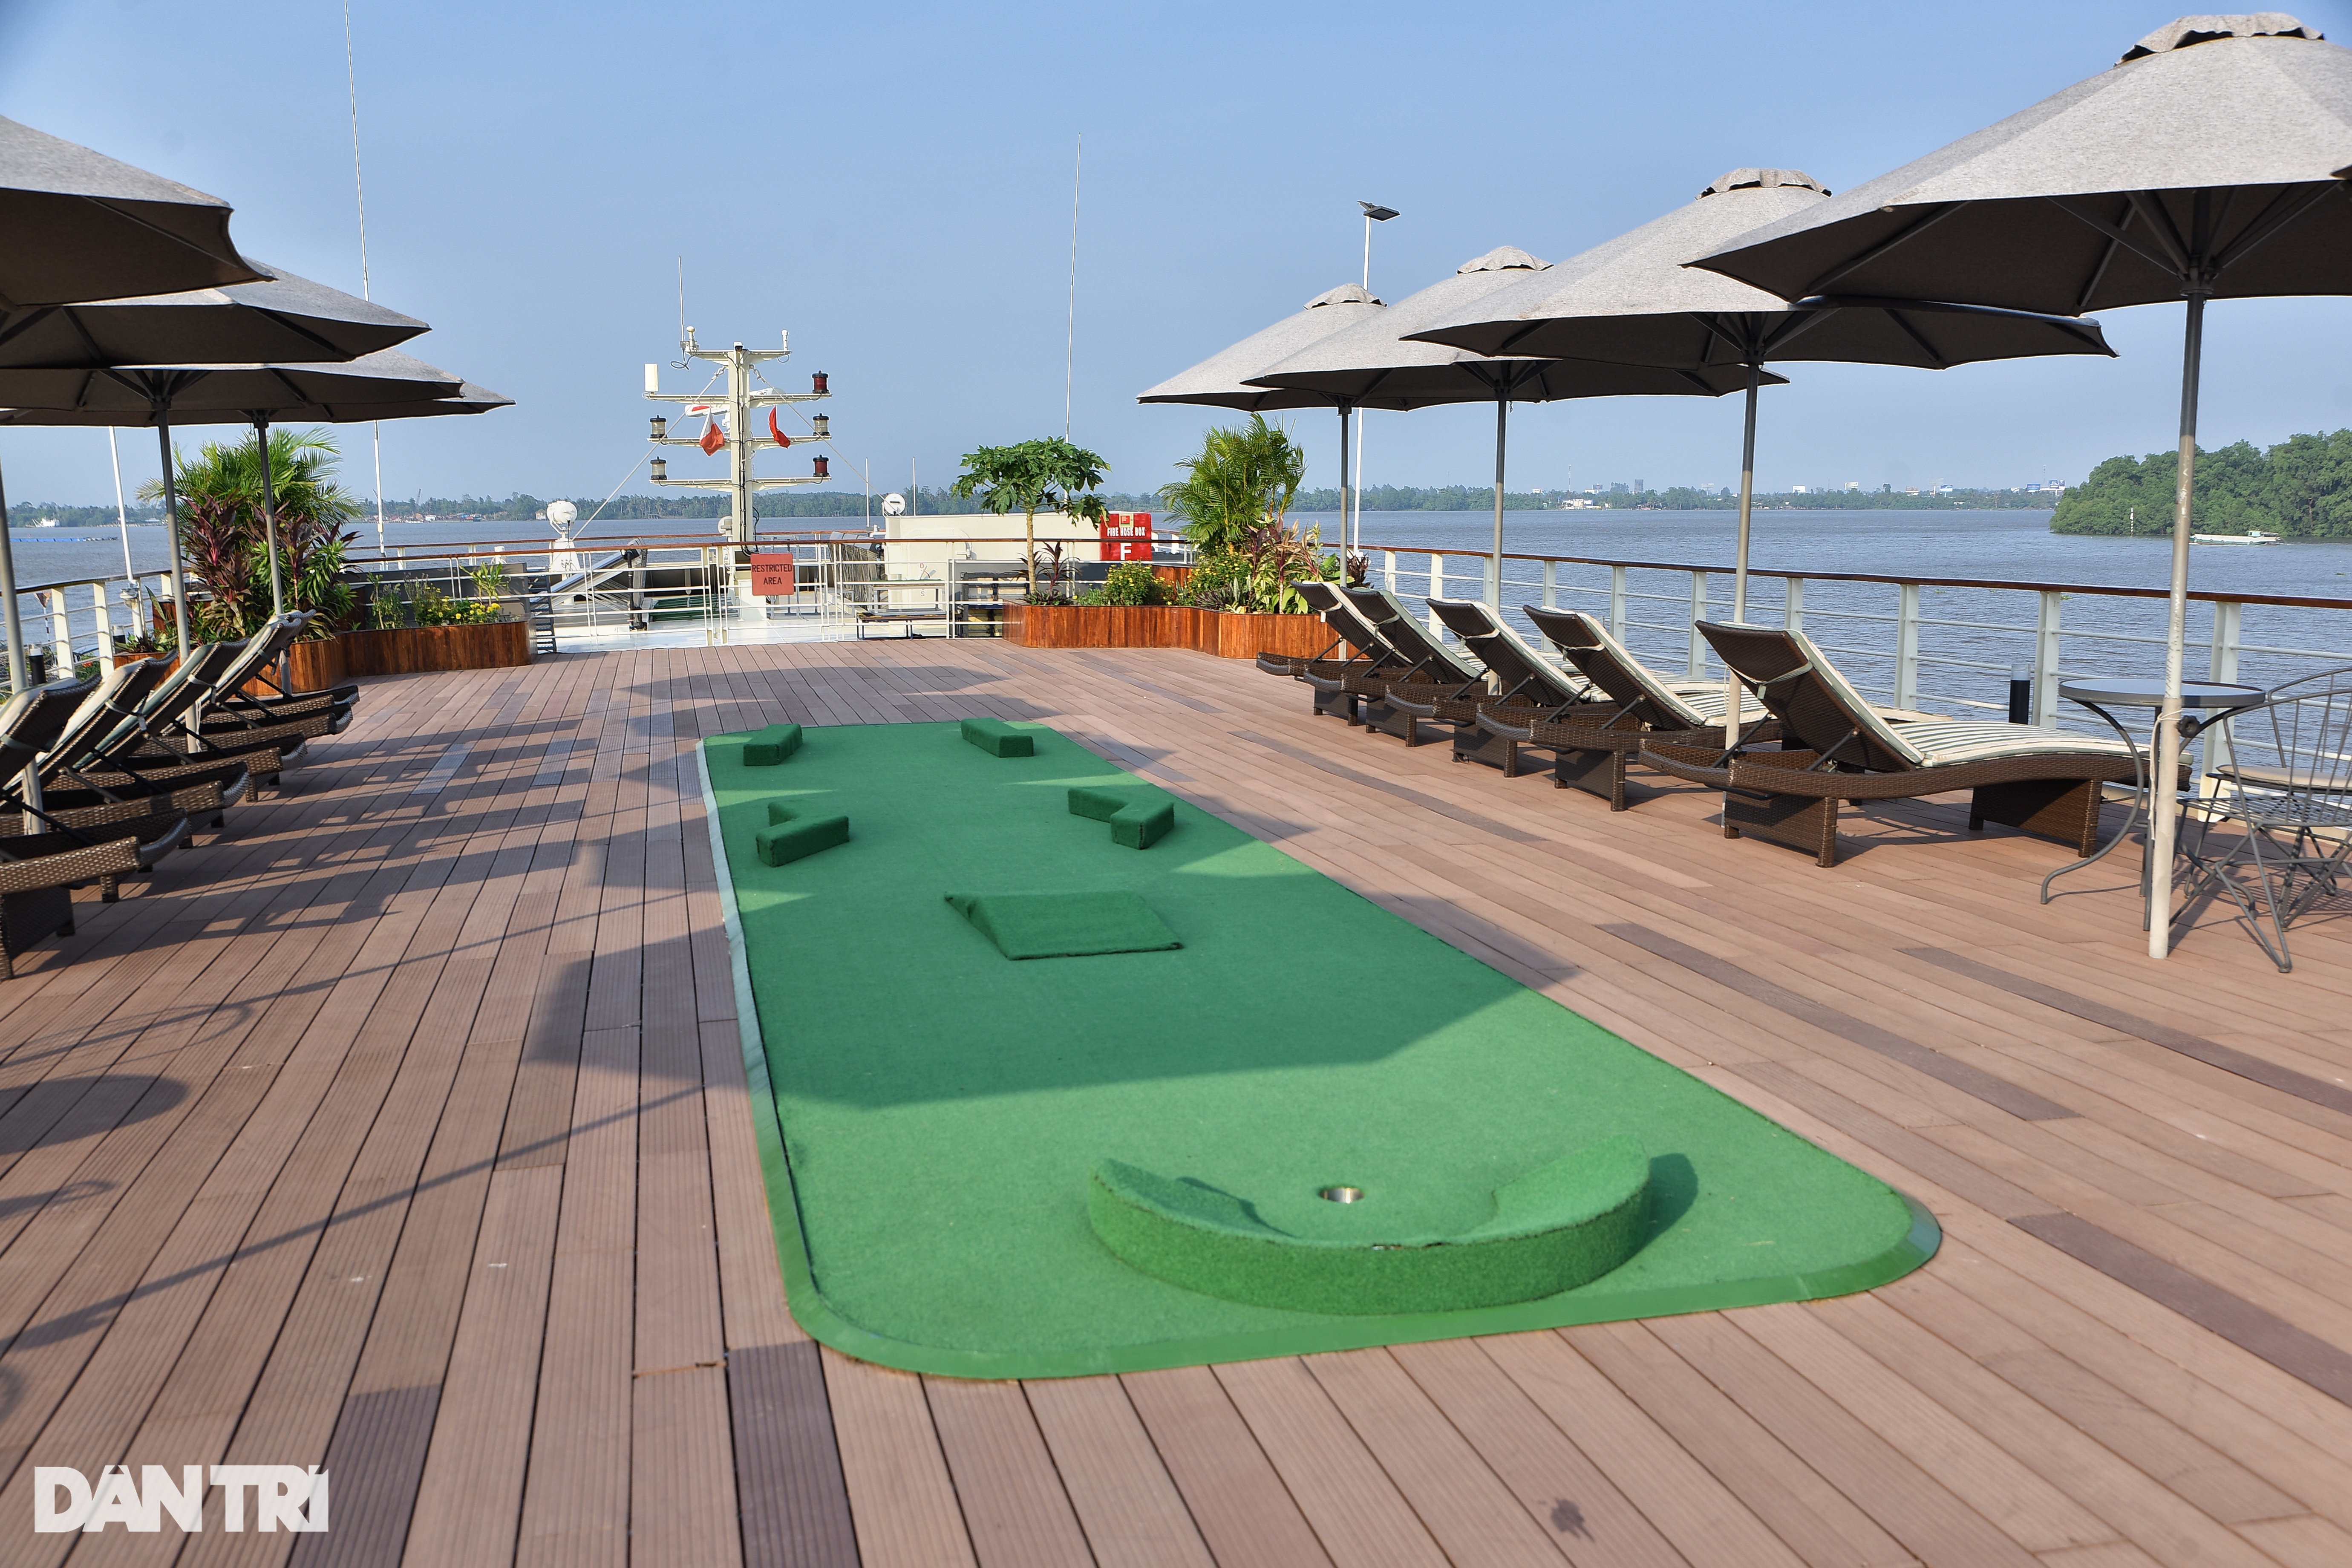 View - Cận cảnh du thuyền triệu đô trên sông Mekong: Có sân golf, rạp phim | Báo Dân trí